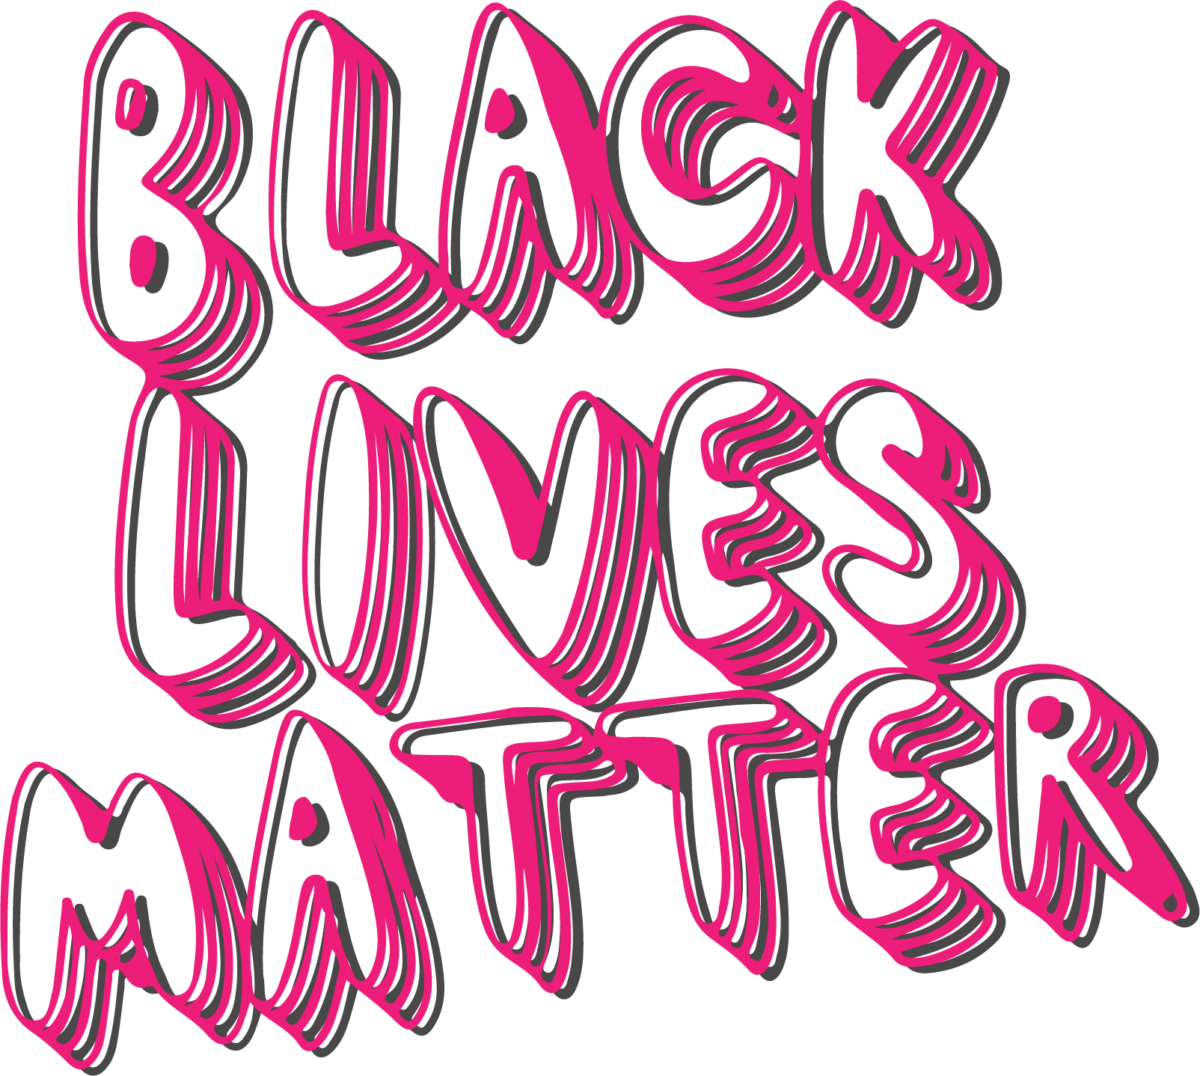 Black lives also matters Svg